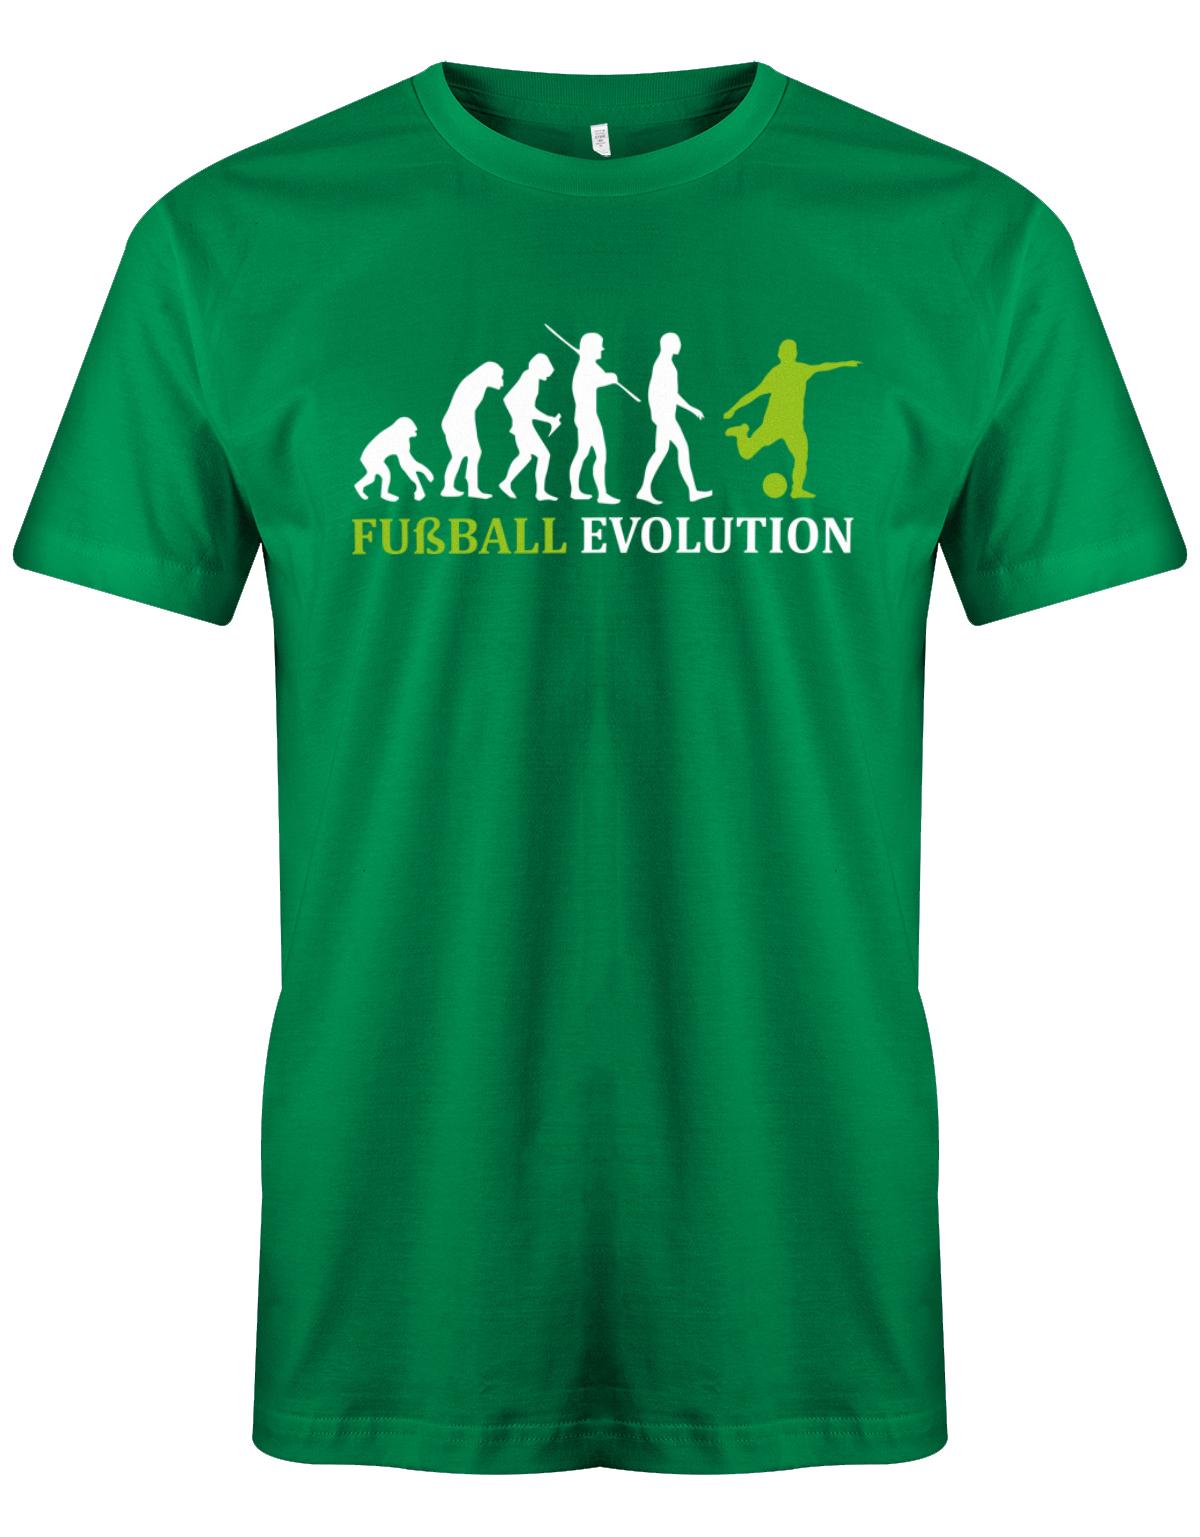 Fussball-Evolution-Herren-Shirt-Gr-n-Gr-n